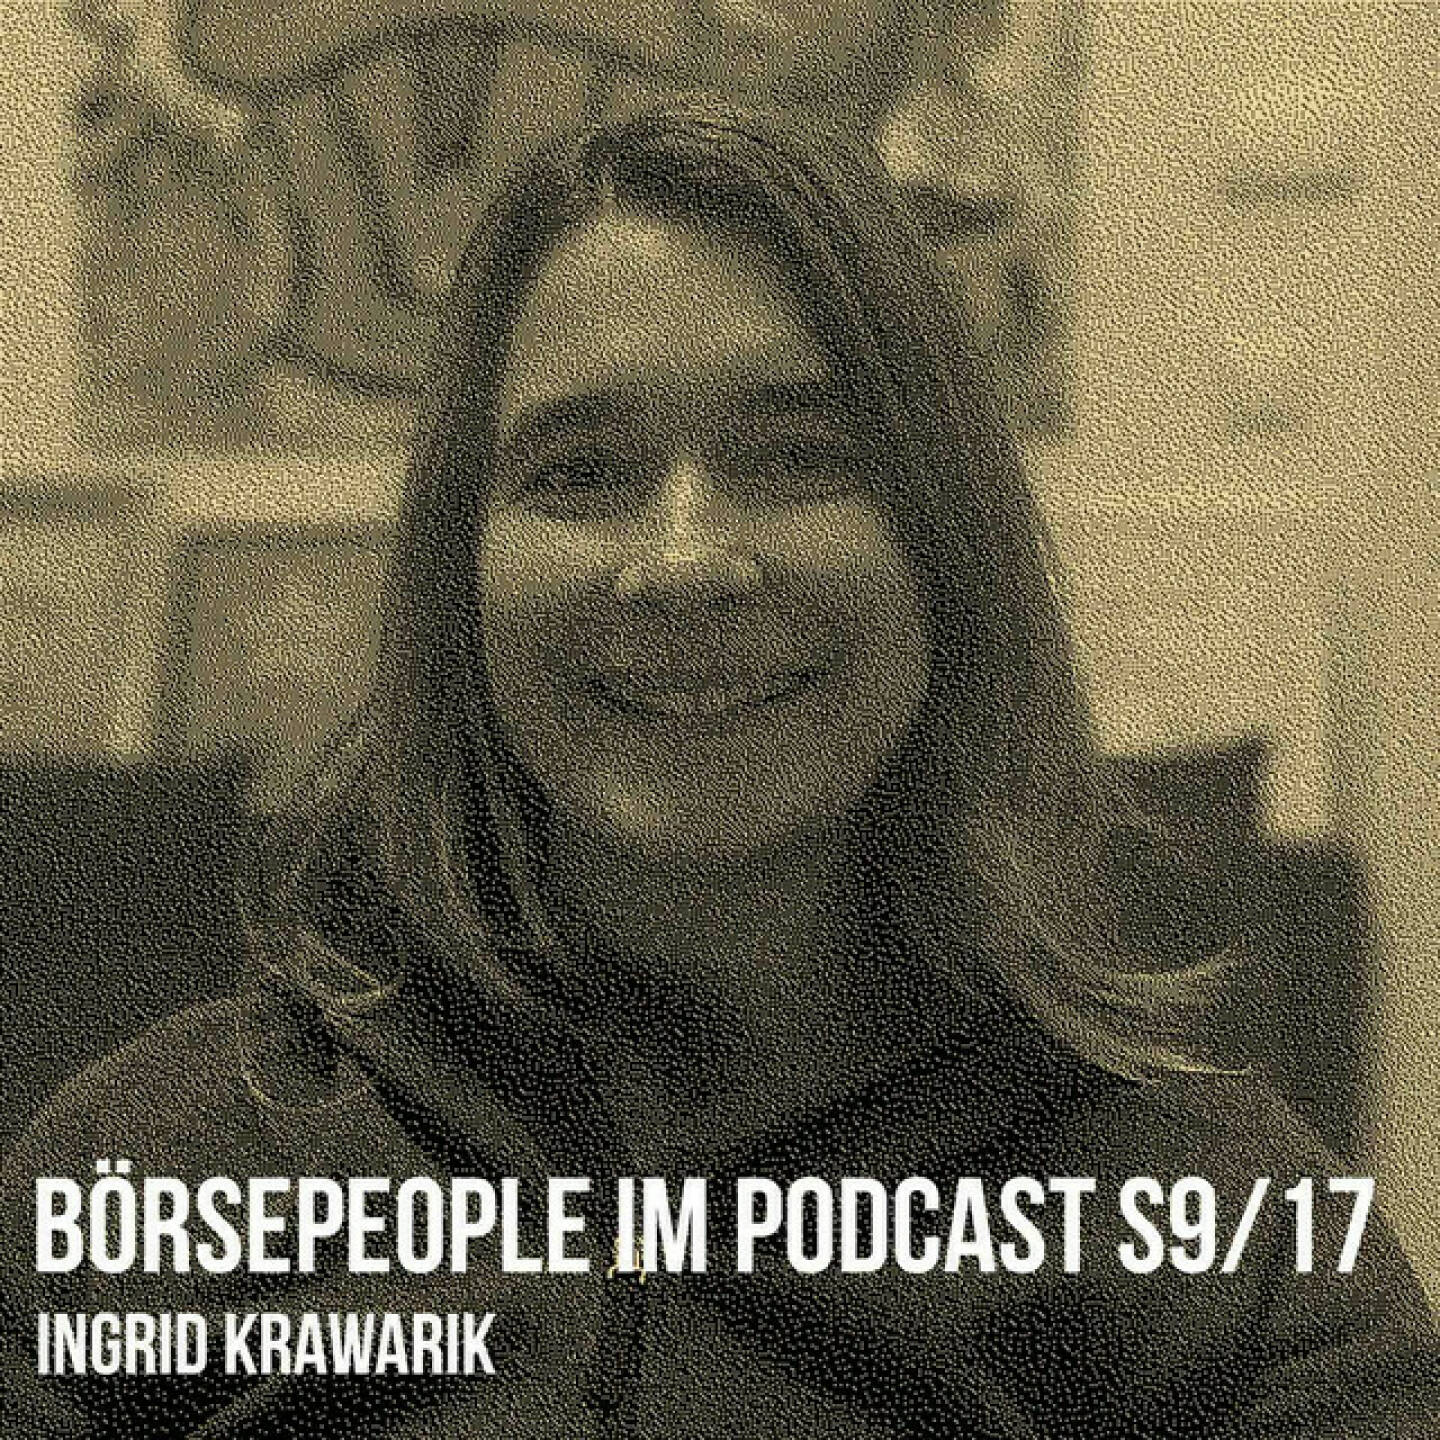 https://open.spotify.com/episode/1DcrtBXw4l2TdWmJ3F94RS
Börsepeople im Podcast S9/17: Ingrid Krawarik - <p>Ingrid Krawarik ist Stv. Chefredakteurin DerBörsianer, war davor u.a. bei Österreich, hat für das Format und das WirtschaftsBlatt geschrieben. Wir sprechen über den Wirtschaftsjournalismus, Selfies und bitte keine Selfies mit mir (ich hatte während der Aufnahme Ausläufer eines Allergieschocks im Gesicht) sowie die tollen CEOs in Österreich. Aber wir holen noch viel weiter aus, als &#34;ingilovesscotland&#34; on Instagram nennt sie die Punkte Abenteuermuhme, Kräuterhexe, schwimmt in kalten Seen und Flüssen, liebt Schottland, Basketball und Brotbacken.Als &#34;cowgirlingi&#34; on Twitter wiederum Stv. Chefredakteurin DerBörsianer, Basketballspielerin, Boxerin, Regisseurin, Schauspielerin. Seelenmensch. Über all das sprechen wir, aktuell ist Ingrid auch in einem Theaterstück zu sehen. Es war eine gut gelaunte Folge.<br/><br/><a href=https://www.derboersianer.com target=_blank>https://www.derboersianer.com</a><br/><br/>Ingrid im Theater bis 18.11. (Di -Sa). <a href=https://www.theatercenterforum.com/guns-and-nuns/ target=_blank>https://www.theatercenterforum.com/guns-and-nuns/</a><br/><br/><a href=https://www.instagram.com/ingilovesscotland/?hl&#61;de target=_blank>https://www.instagram.com/ingilovesscotland/?hl&#61;de</a><br/><br/><a href=https://twitter.com/cowgirlingi target=_blank>https://twitter.com/cowgirlingi</a><br/><br/>About: Die Serie Börsepeople findet im Rahmen von <a href=http://www.audio-cd.at target=_blank>http://www.audio-cd.at</a> und dem Podcast &#34;Audio-CD.at Indie Podcasts&#34; statt. Es handelt sich dabei um typische Personality- und Werdegang-Gespräche. Die Season 9 umfasst unter dem Motto „23 Börsepeople“ wieder 23 Talks  Presenter der Season 9 ist EY <a href=https://www.ey.com/de_at target=_blank>https://www.ey.com/de_at</a> . Welcher der meistgehörte Börsepeople Podcast ist, sieht man unter <a href=http://www.audio-cd.at/people target=_blank>http://www.audio-cd.at/people.</a> Der Zwirschenstand des laufenden Rankings ist tagesaktuell um 12 Uhr aktualisiert.<br/><br/>Bewertungen bei Apple (oder auch Spotify) machen mir Freude: <a href=https://podcasts.apple.com/at/podcast/audio-cd-at-indie-podcasts-wiener-boerse-sport-musik-und-mehr/id1484919130 target=_blank>https://podcasts.apple.com/at/podcast/audio-cd-at-indie-podcasts-wiener-boerse-sport-musik-und-mehr/id1484919130</a> .</p>